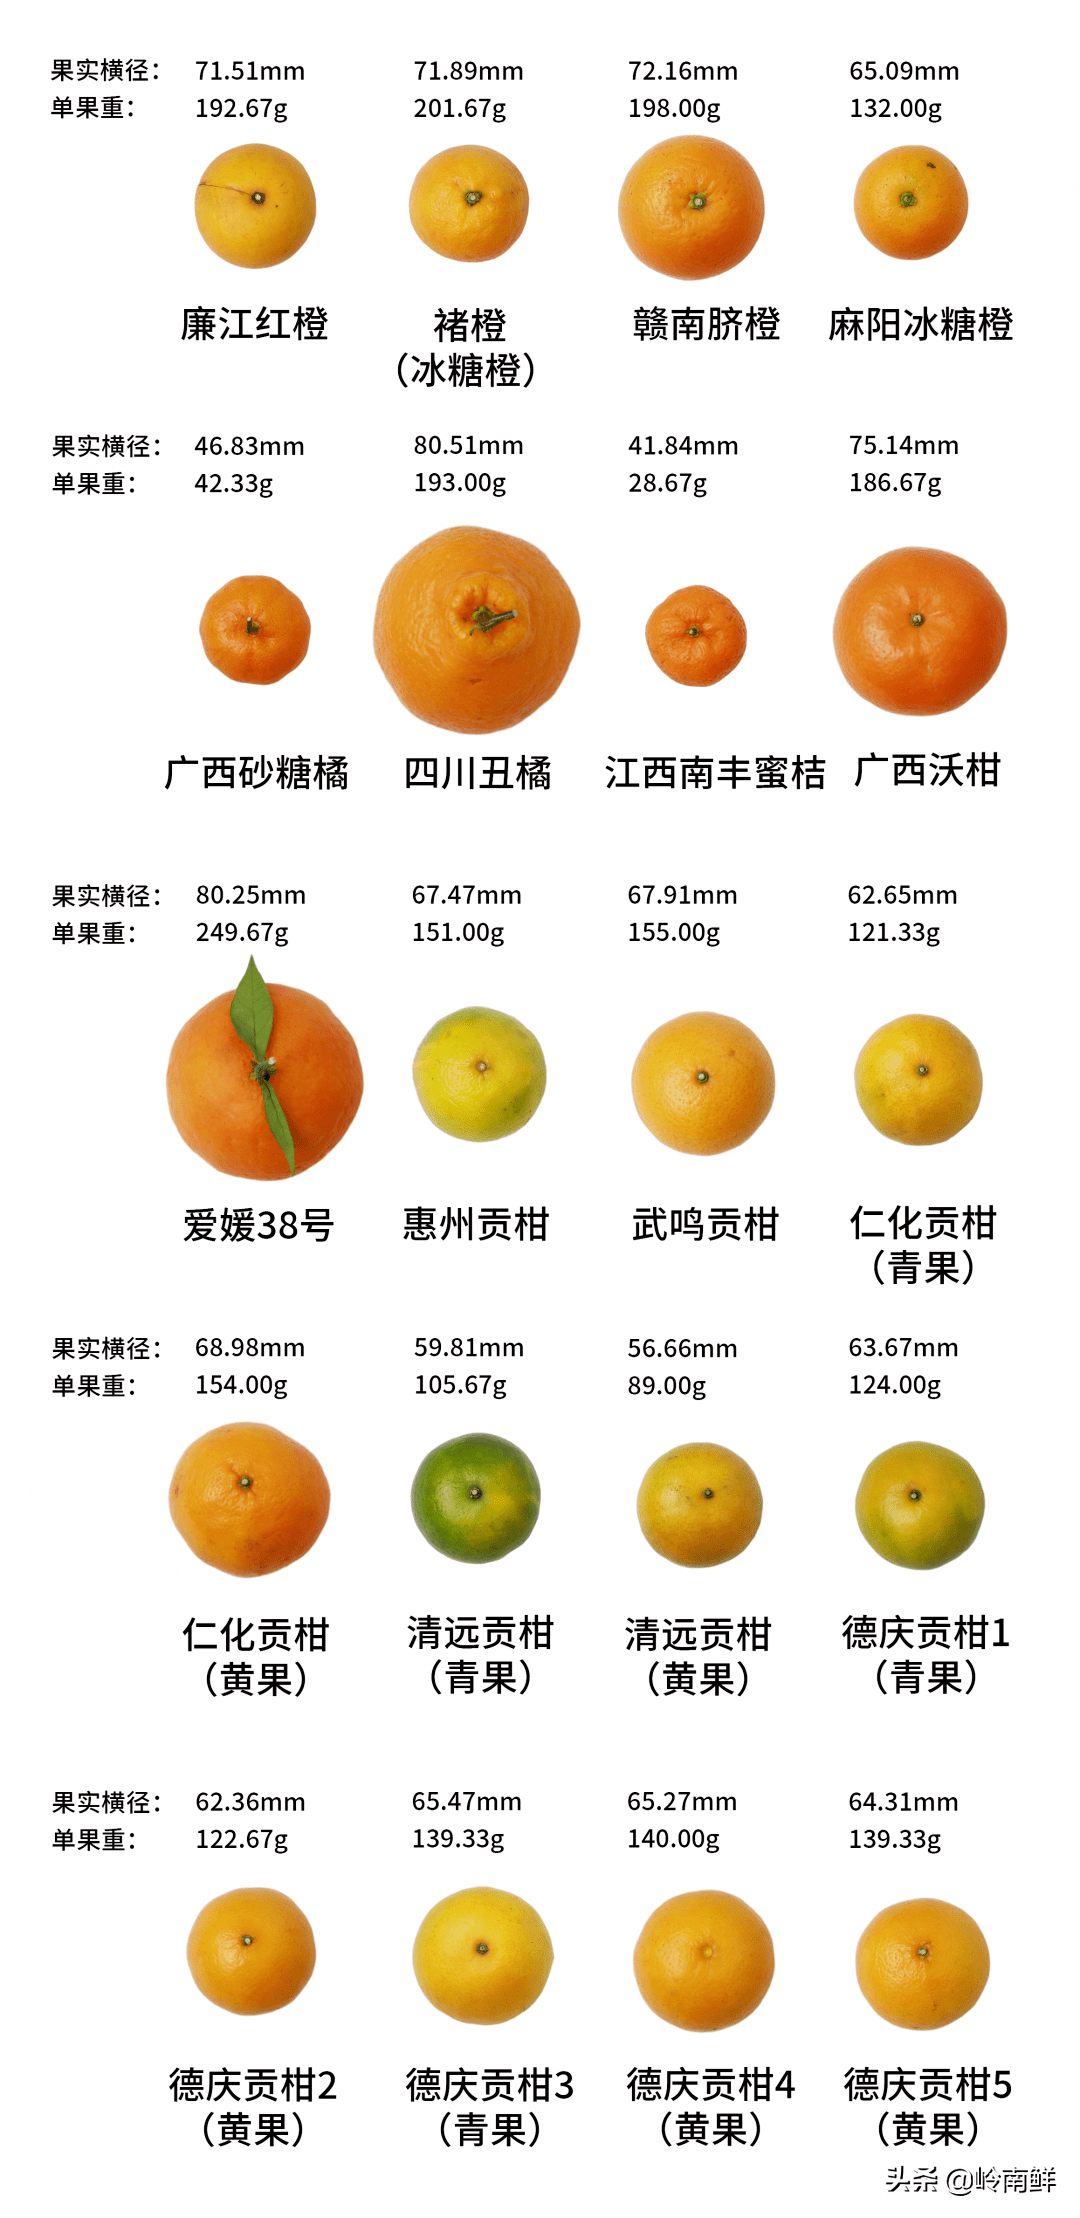 霜红桔橙品种介绍图片